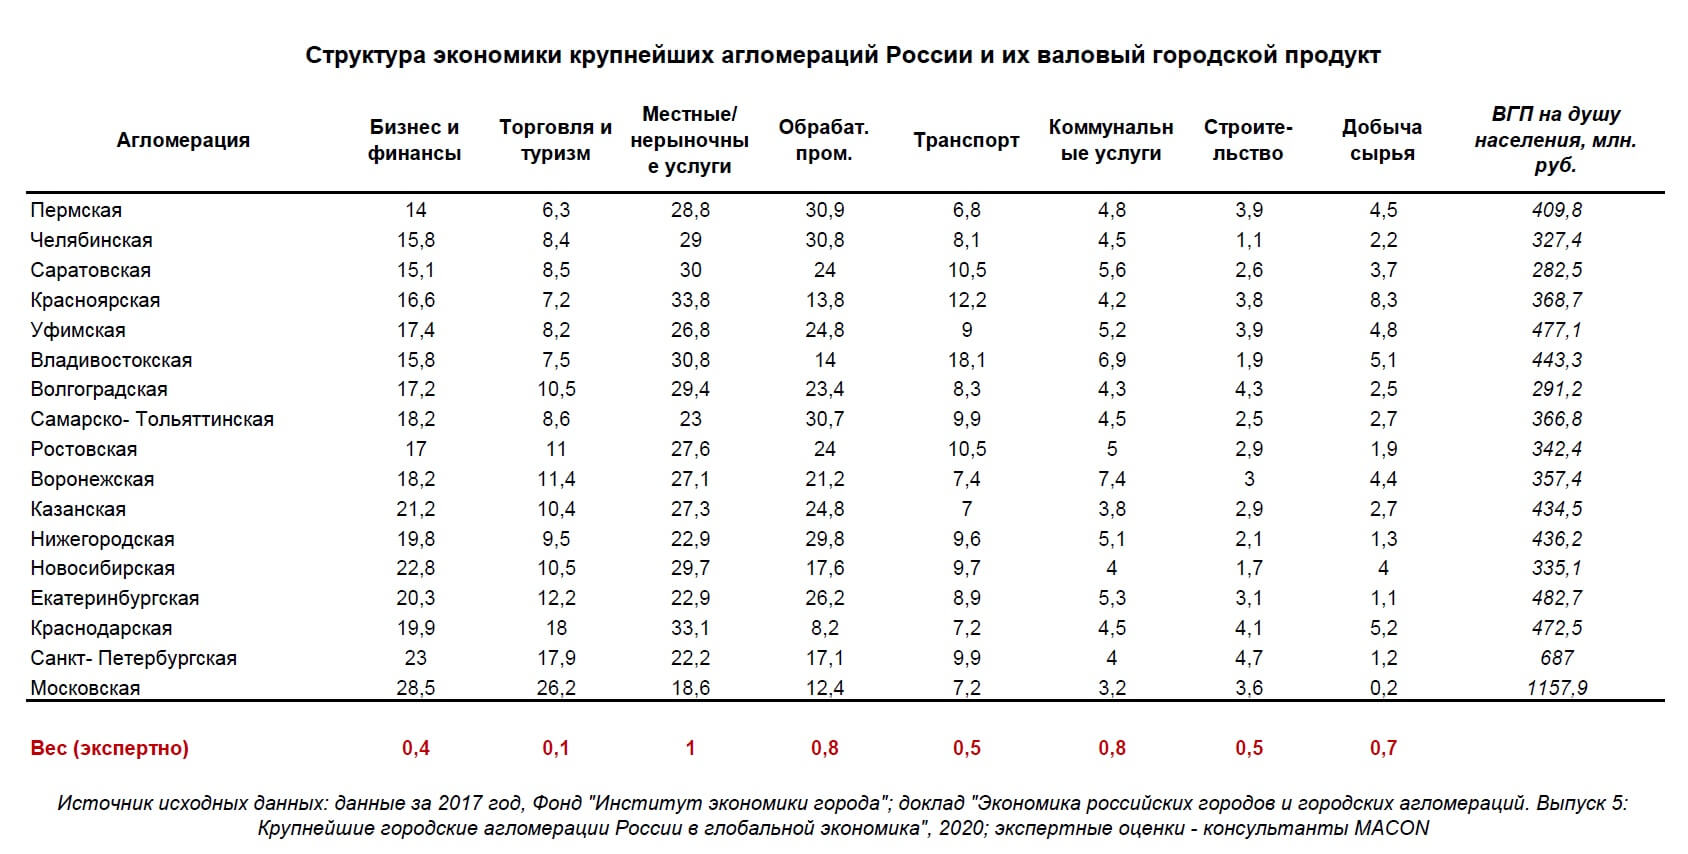 Η δομή της οικονομίας και του ΑΕγχΠ των ρωσικών οικισμών